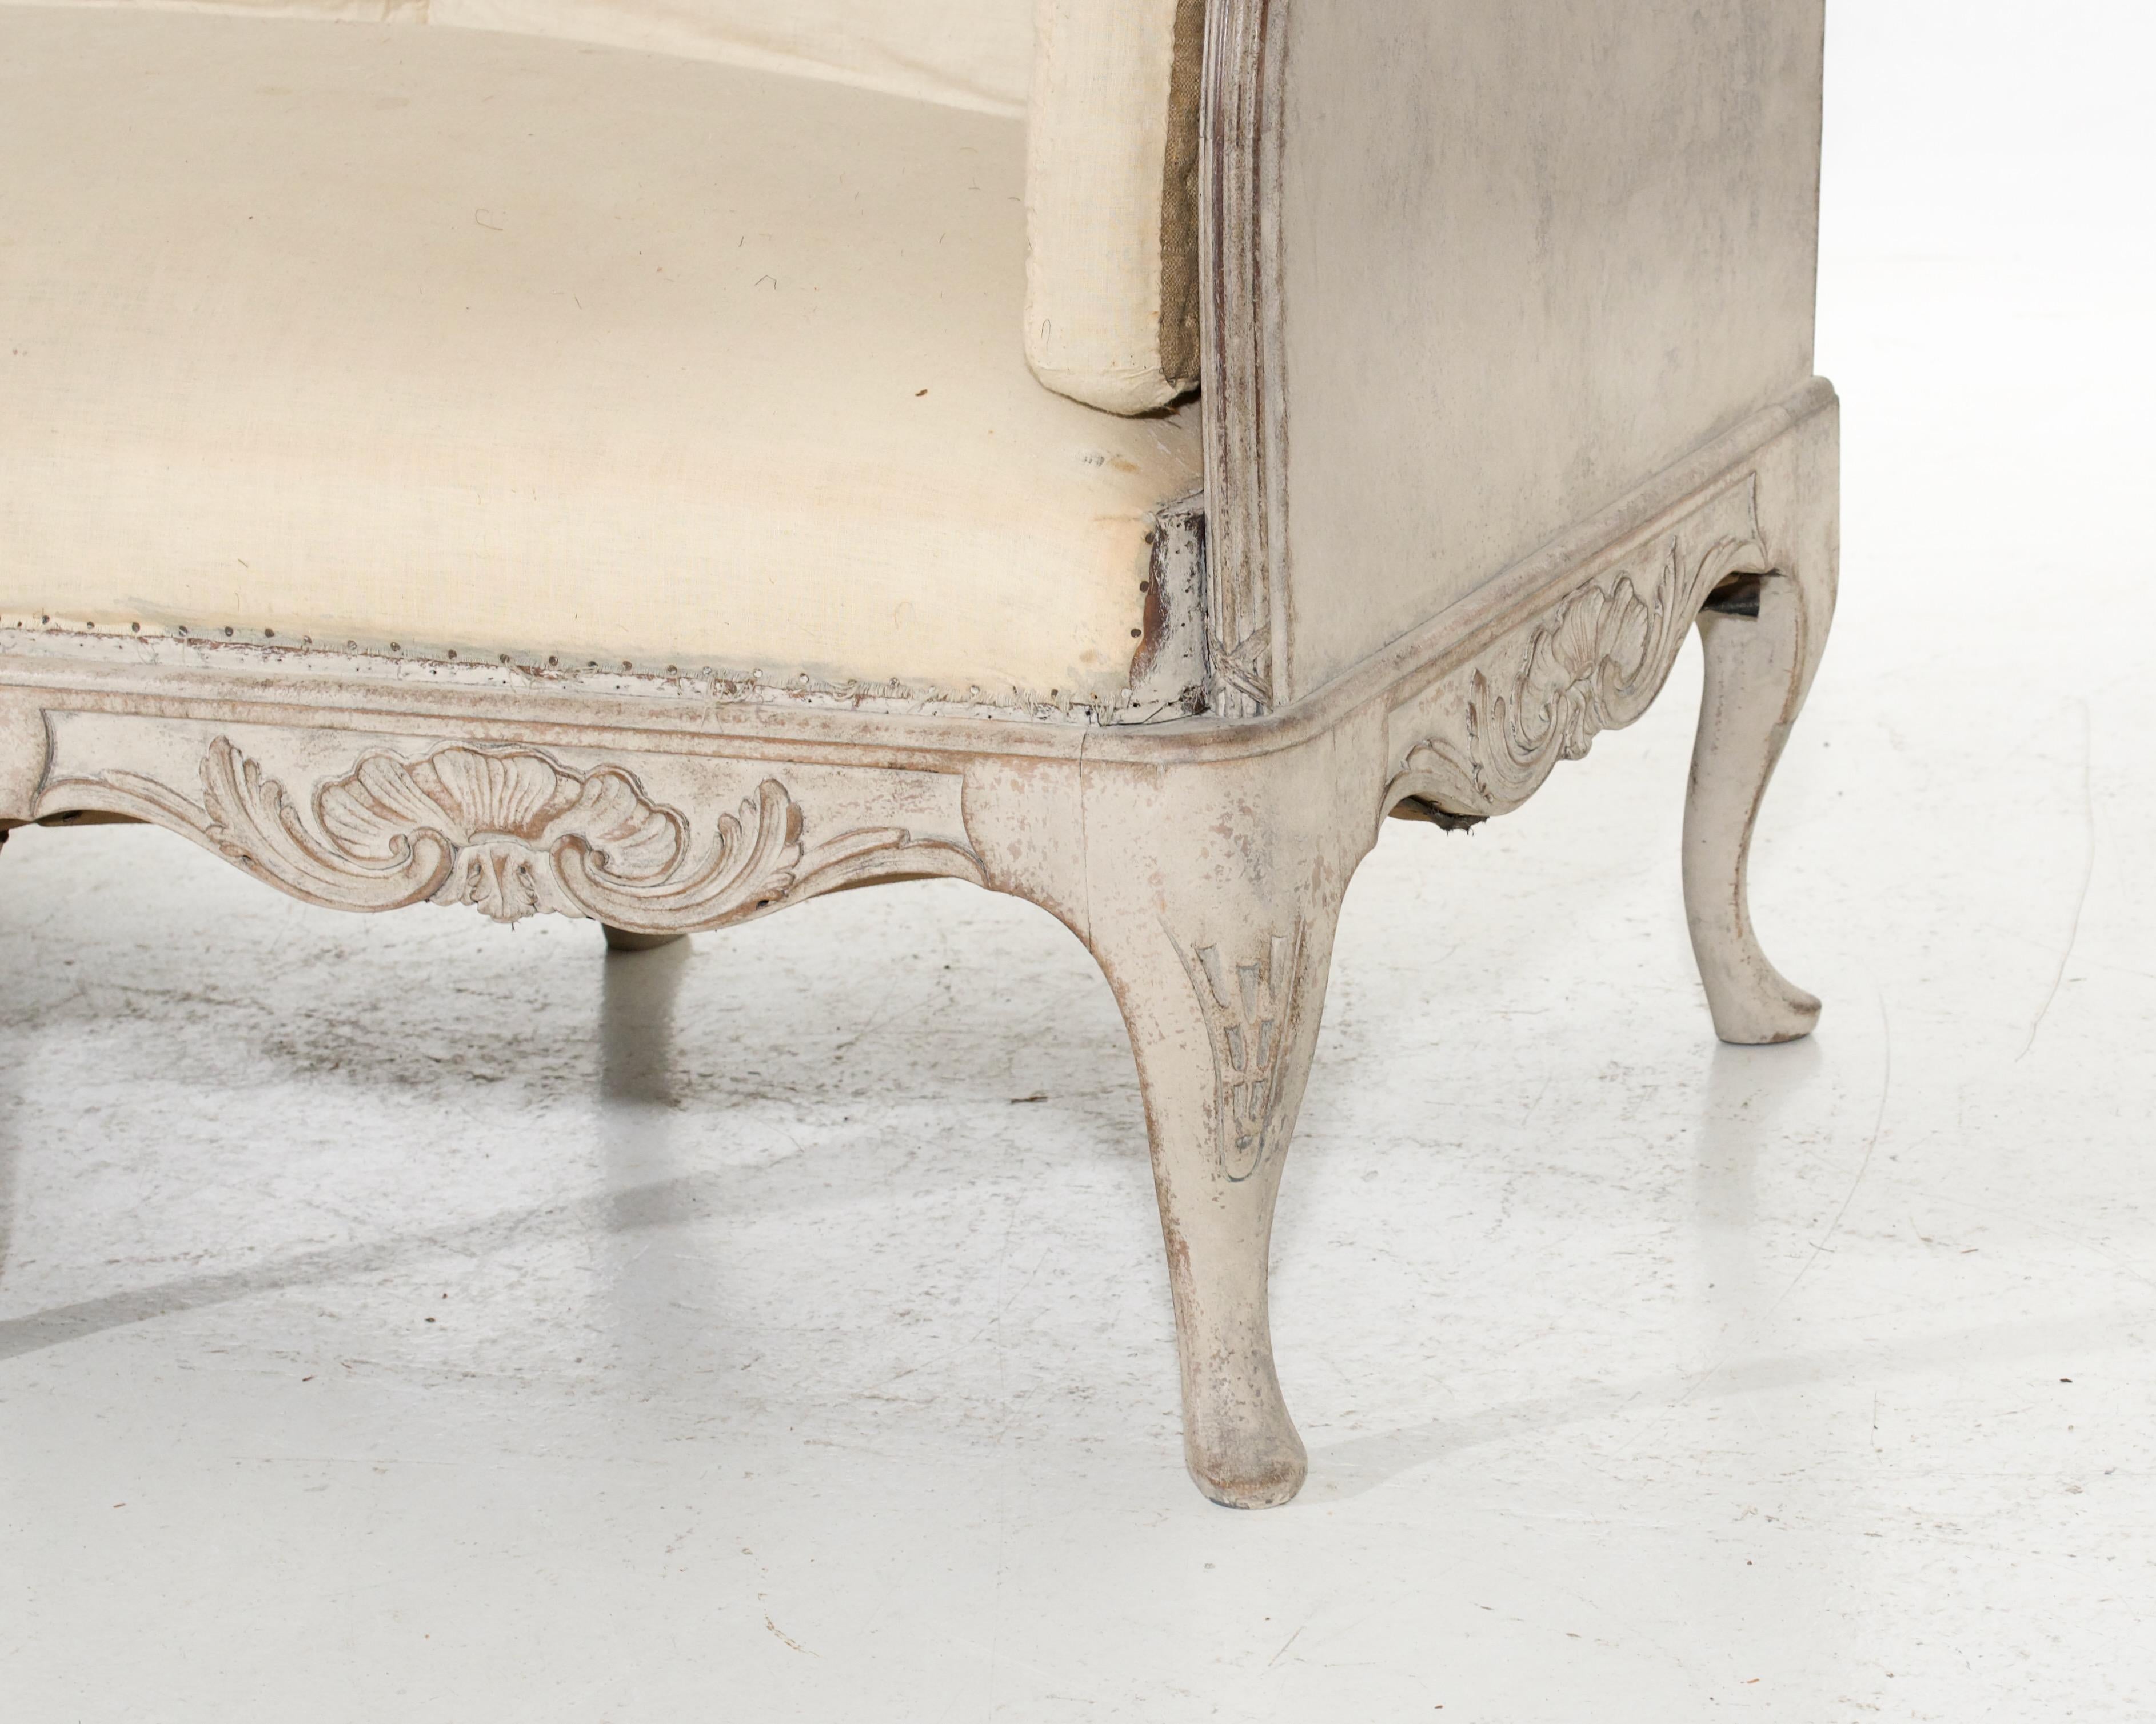 Dieses reizvolle Sofa ist im schwedischen Rokoko-Stil gehalten und wird auf ein Alter von etwa 100 Jahren geschätzt. Das Stück ist freistehend und weist charmante Details auf, die für die damalige Zeit charakteristisch sind. Seine zeitlose Eleganz